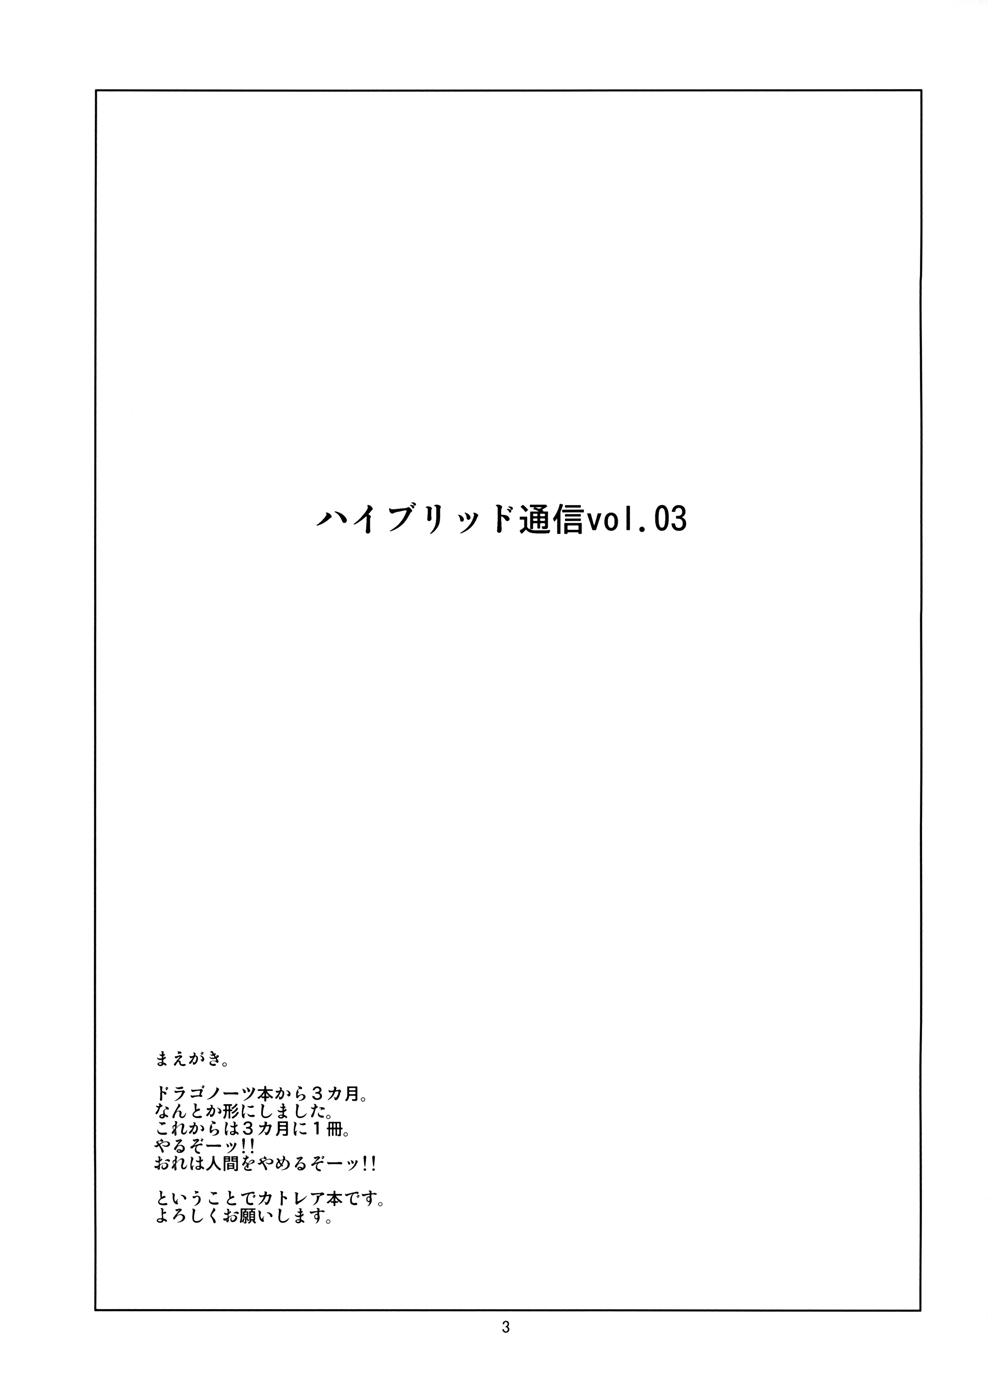 Hybrid Tsuushin Zoukangou vol.01 46